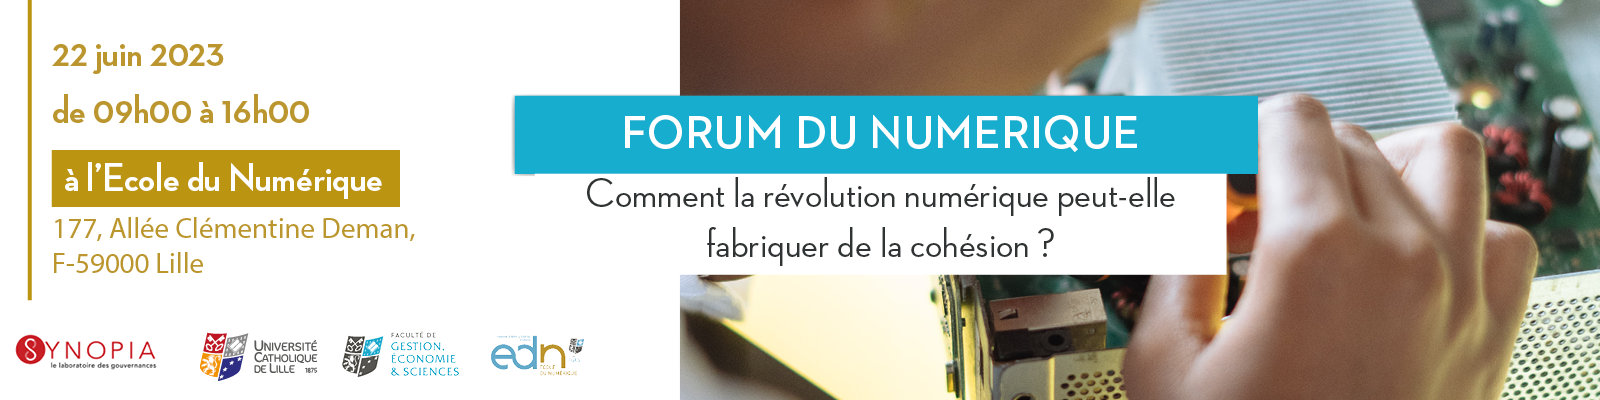 230516 forum numerique